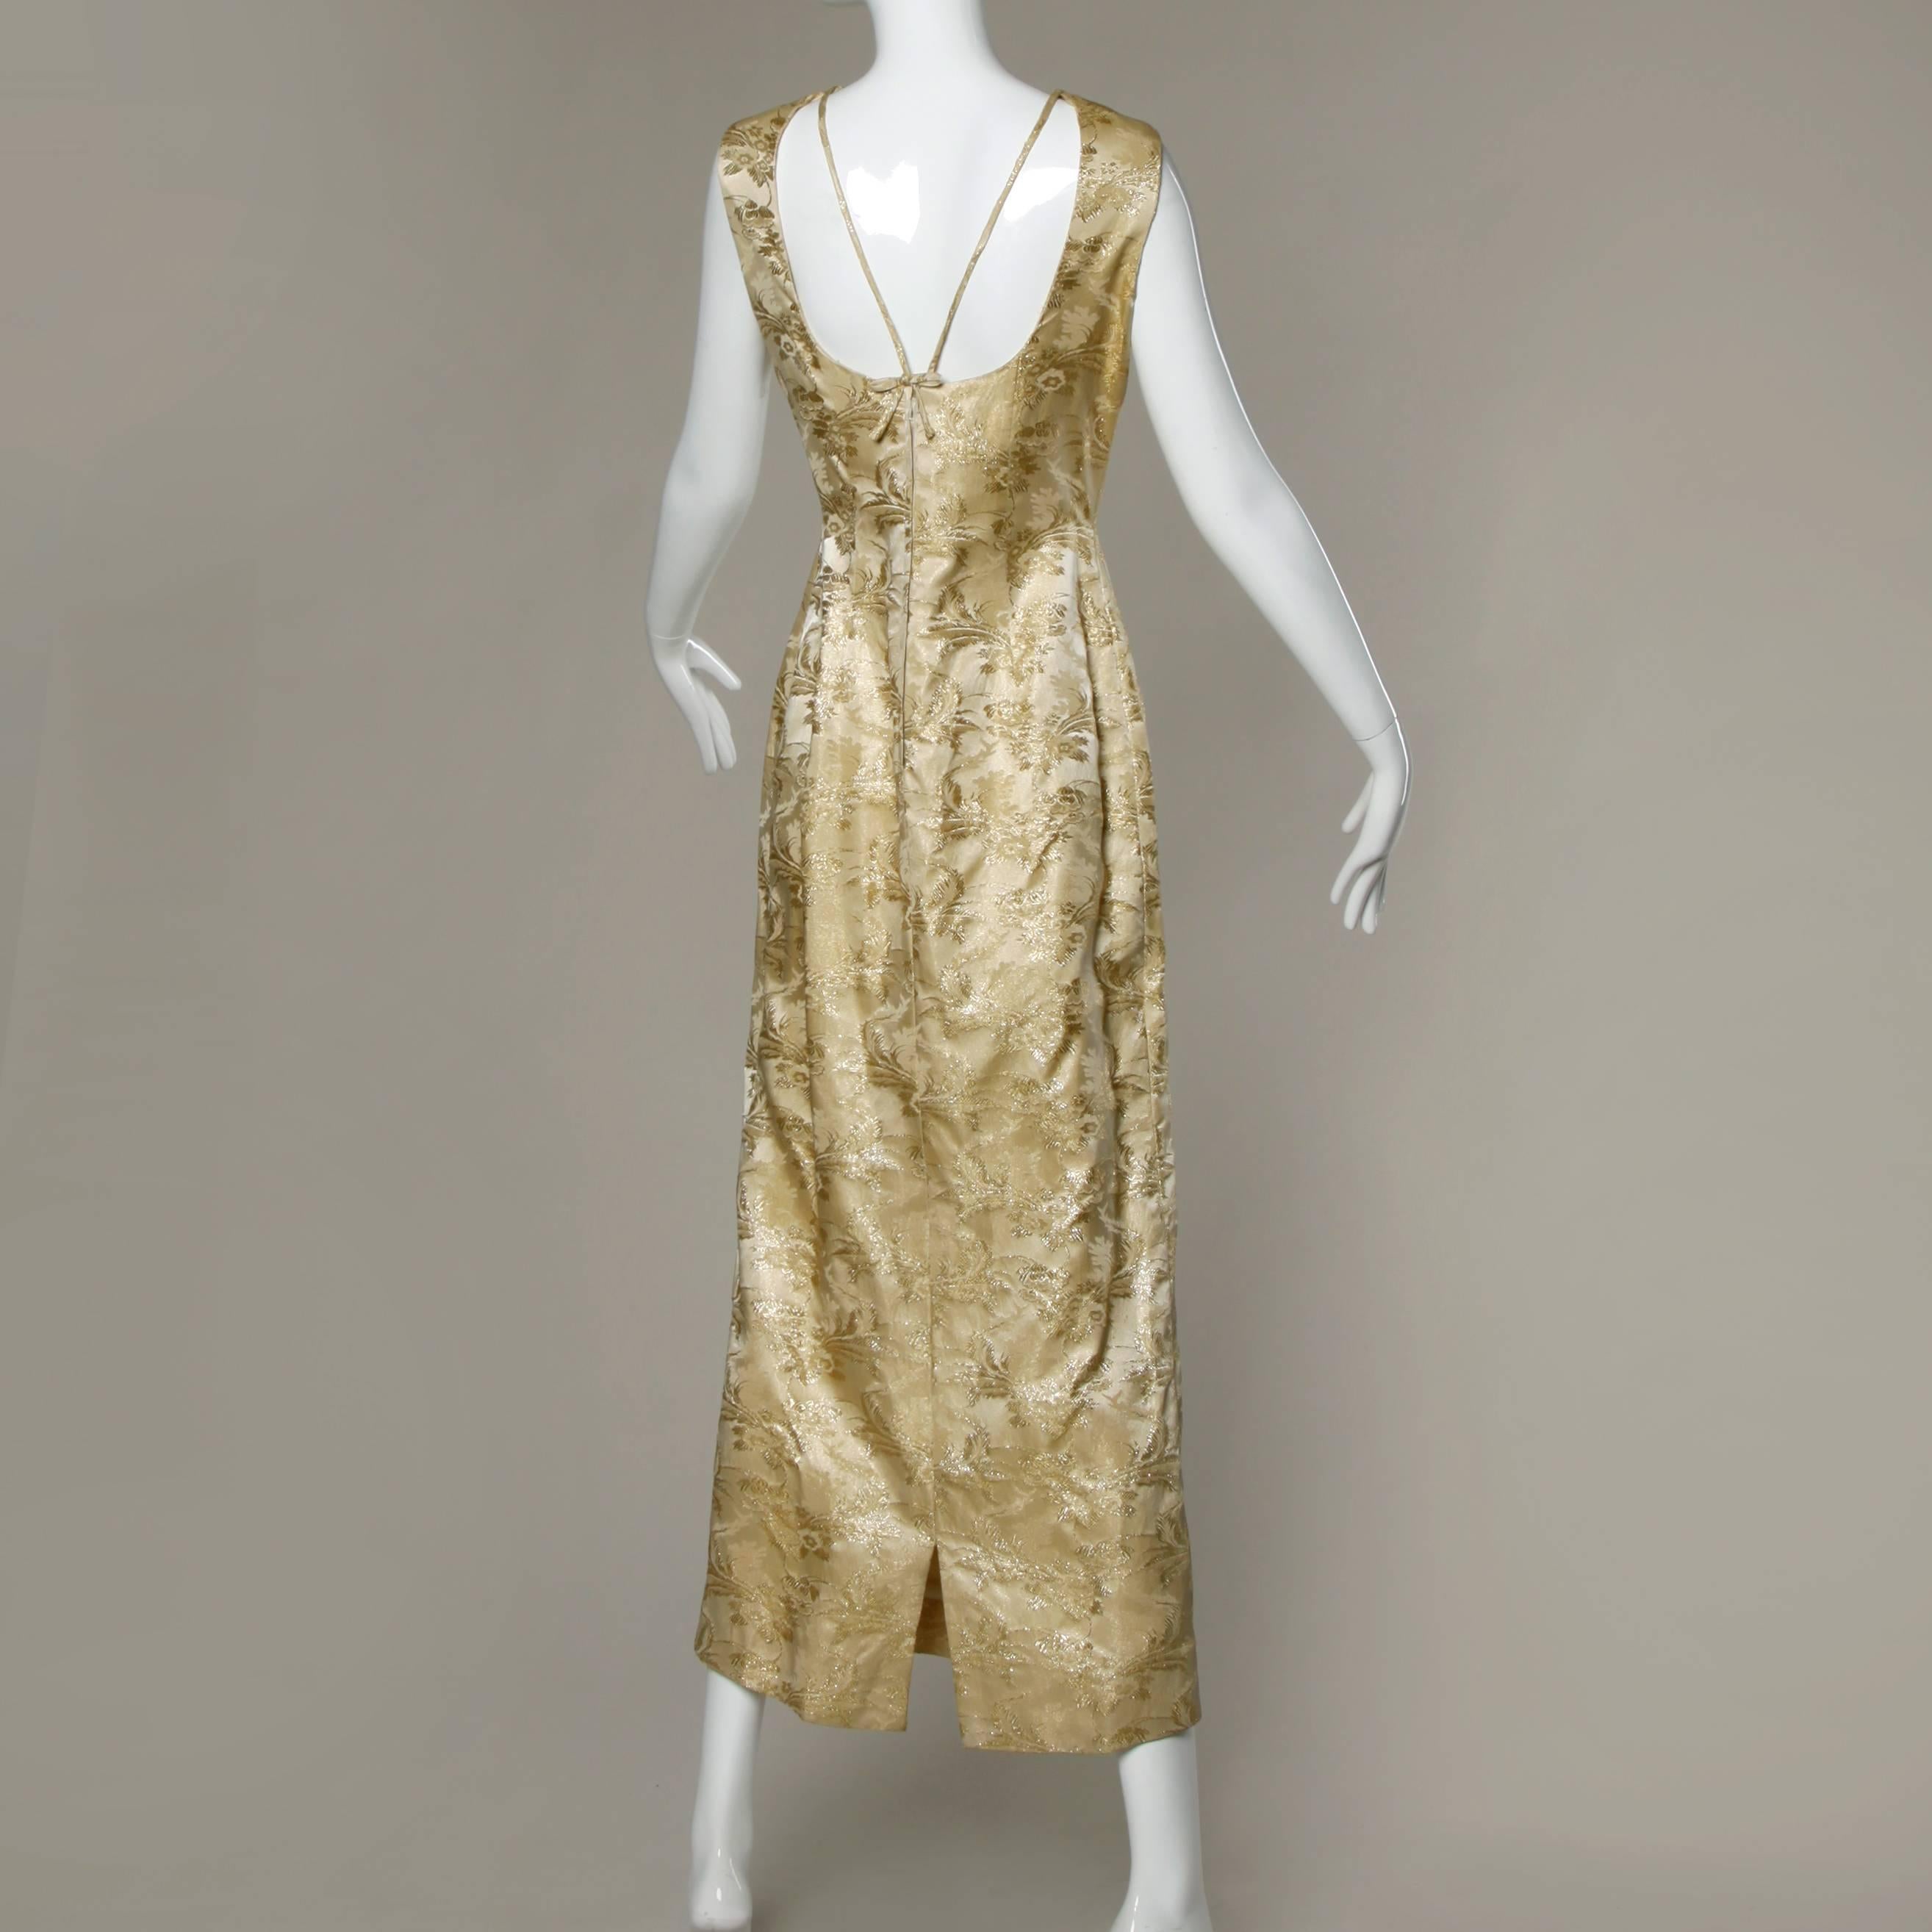 Women's 1960s Gold Brocade Cape + Dress 2-Piece Ensemble